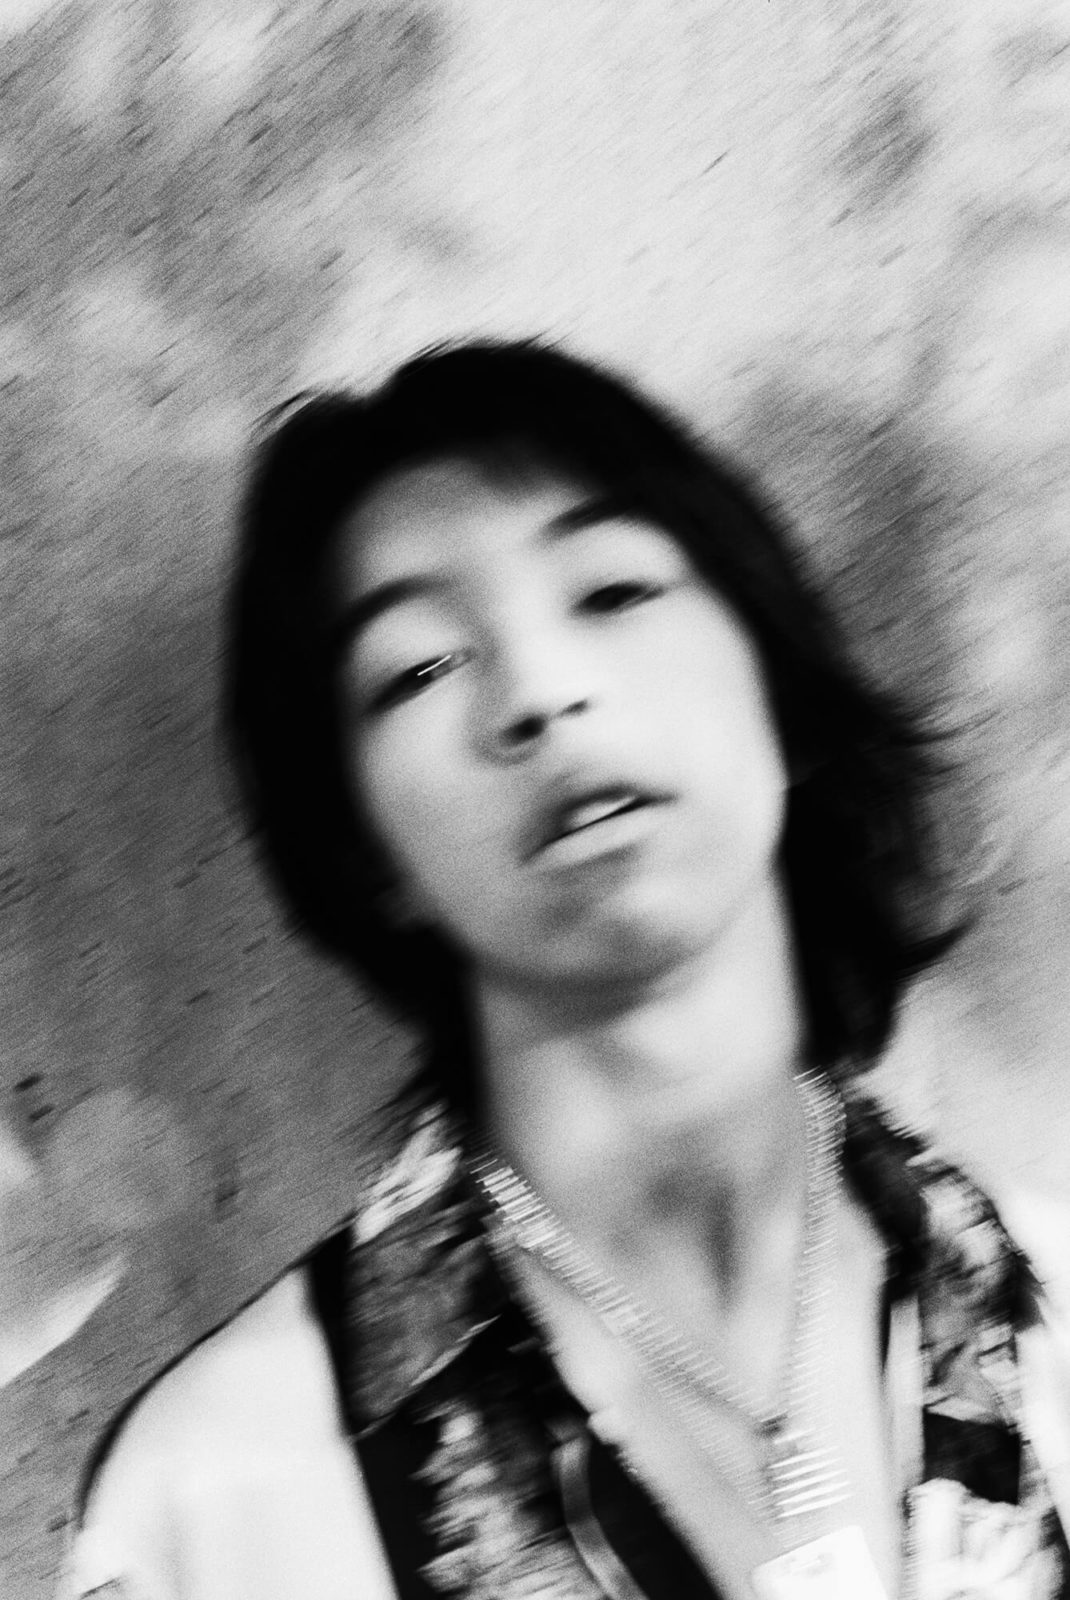 YOSHI、今夏の終わりに話題必至の“超問題作”『RIDING ON TIME』をリリースサムネイル画像!